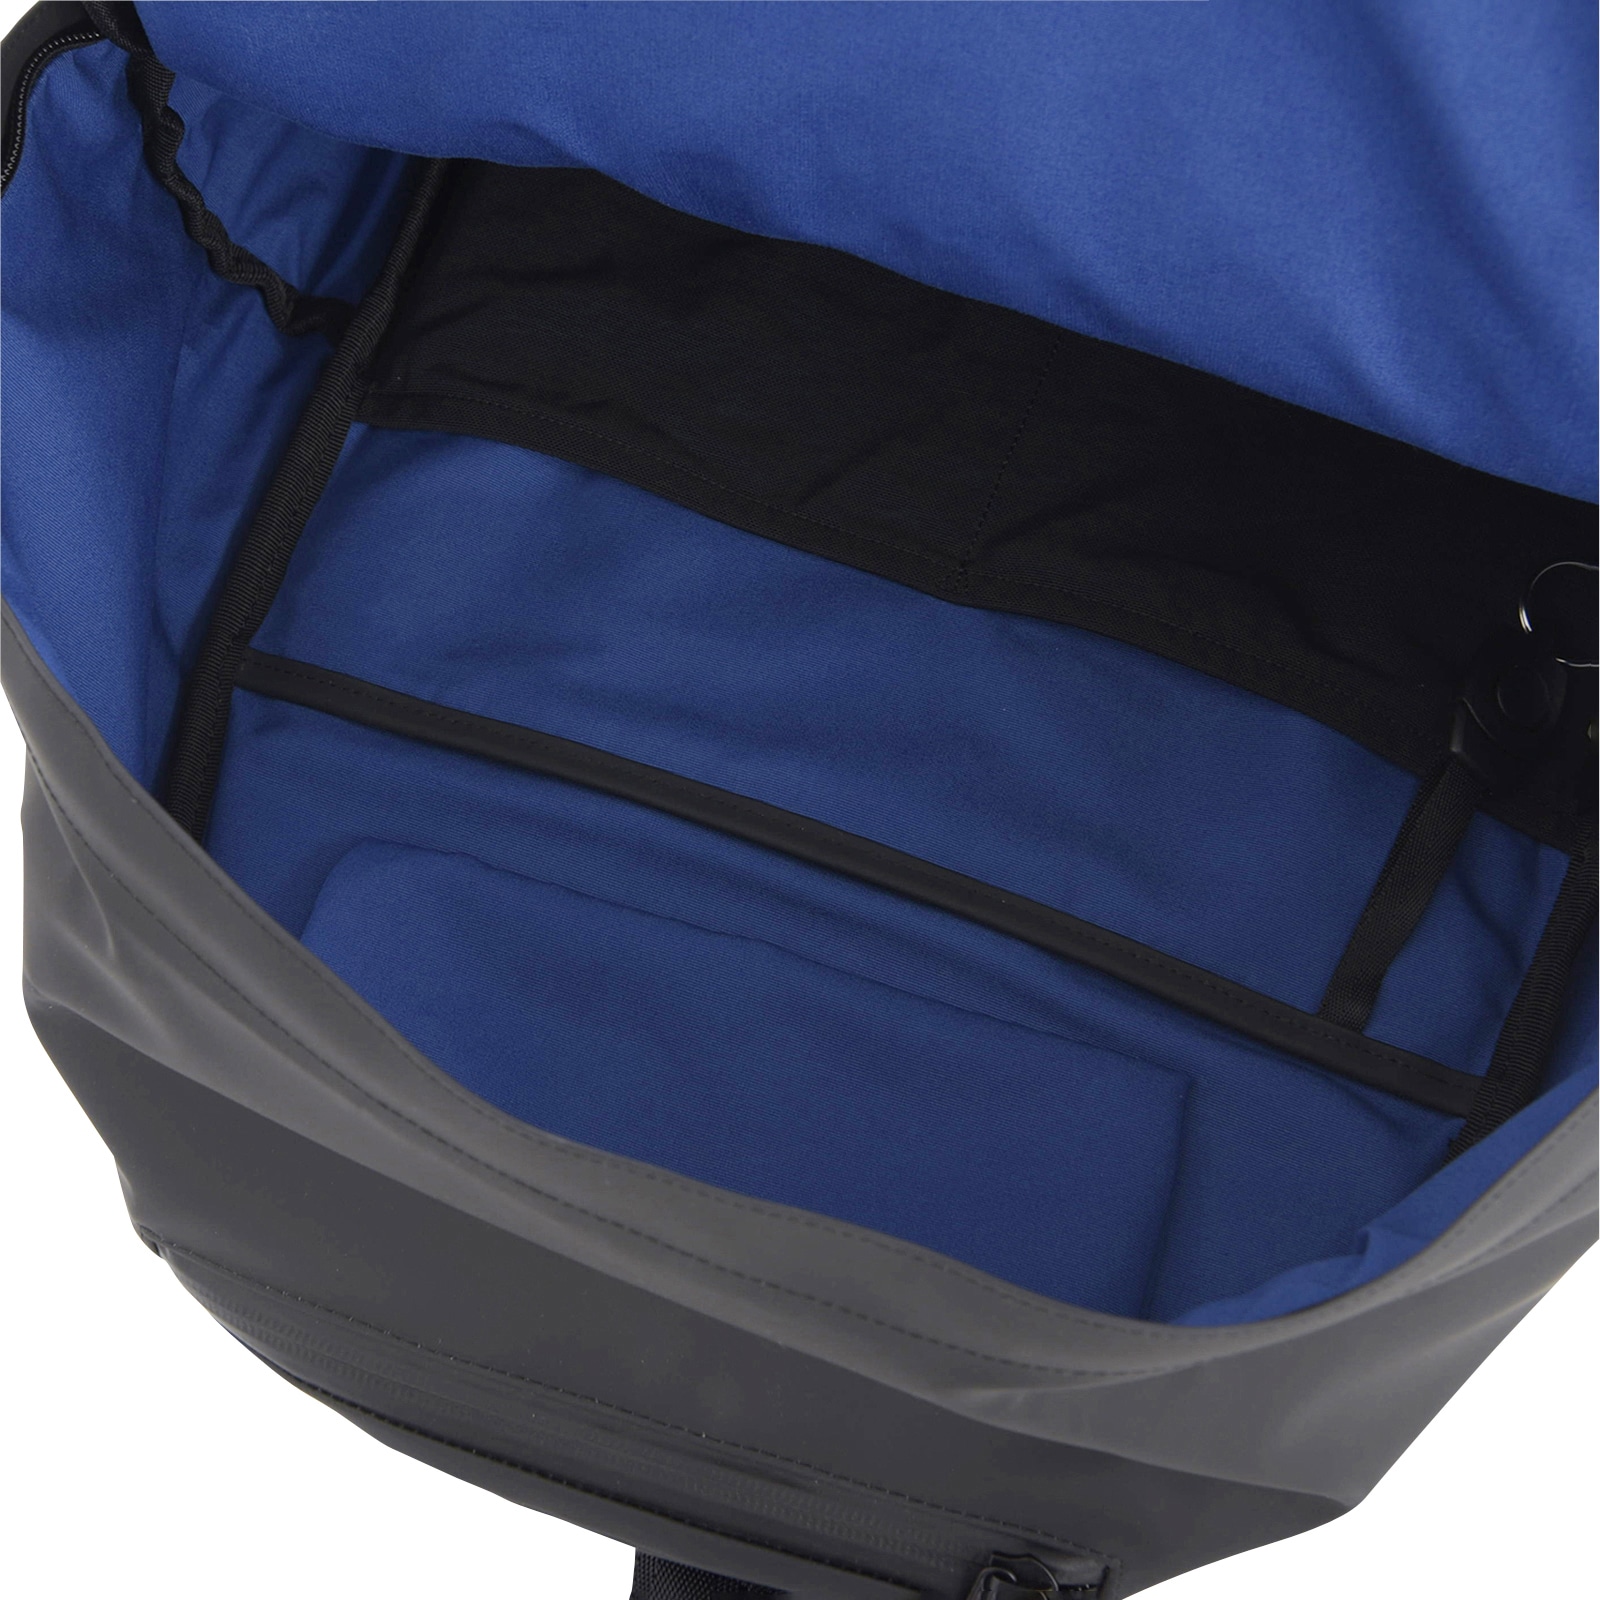 MET24 Waterproof Backpack